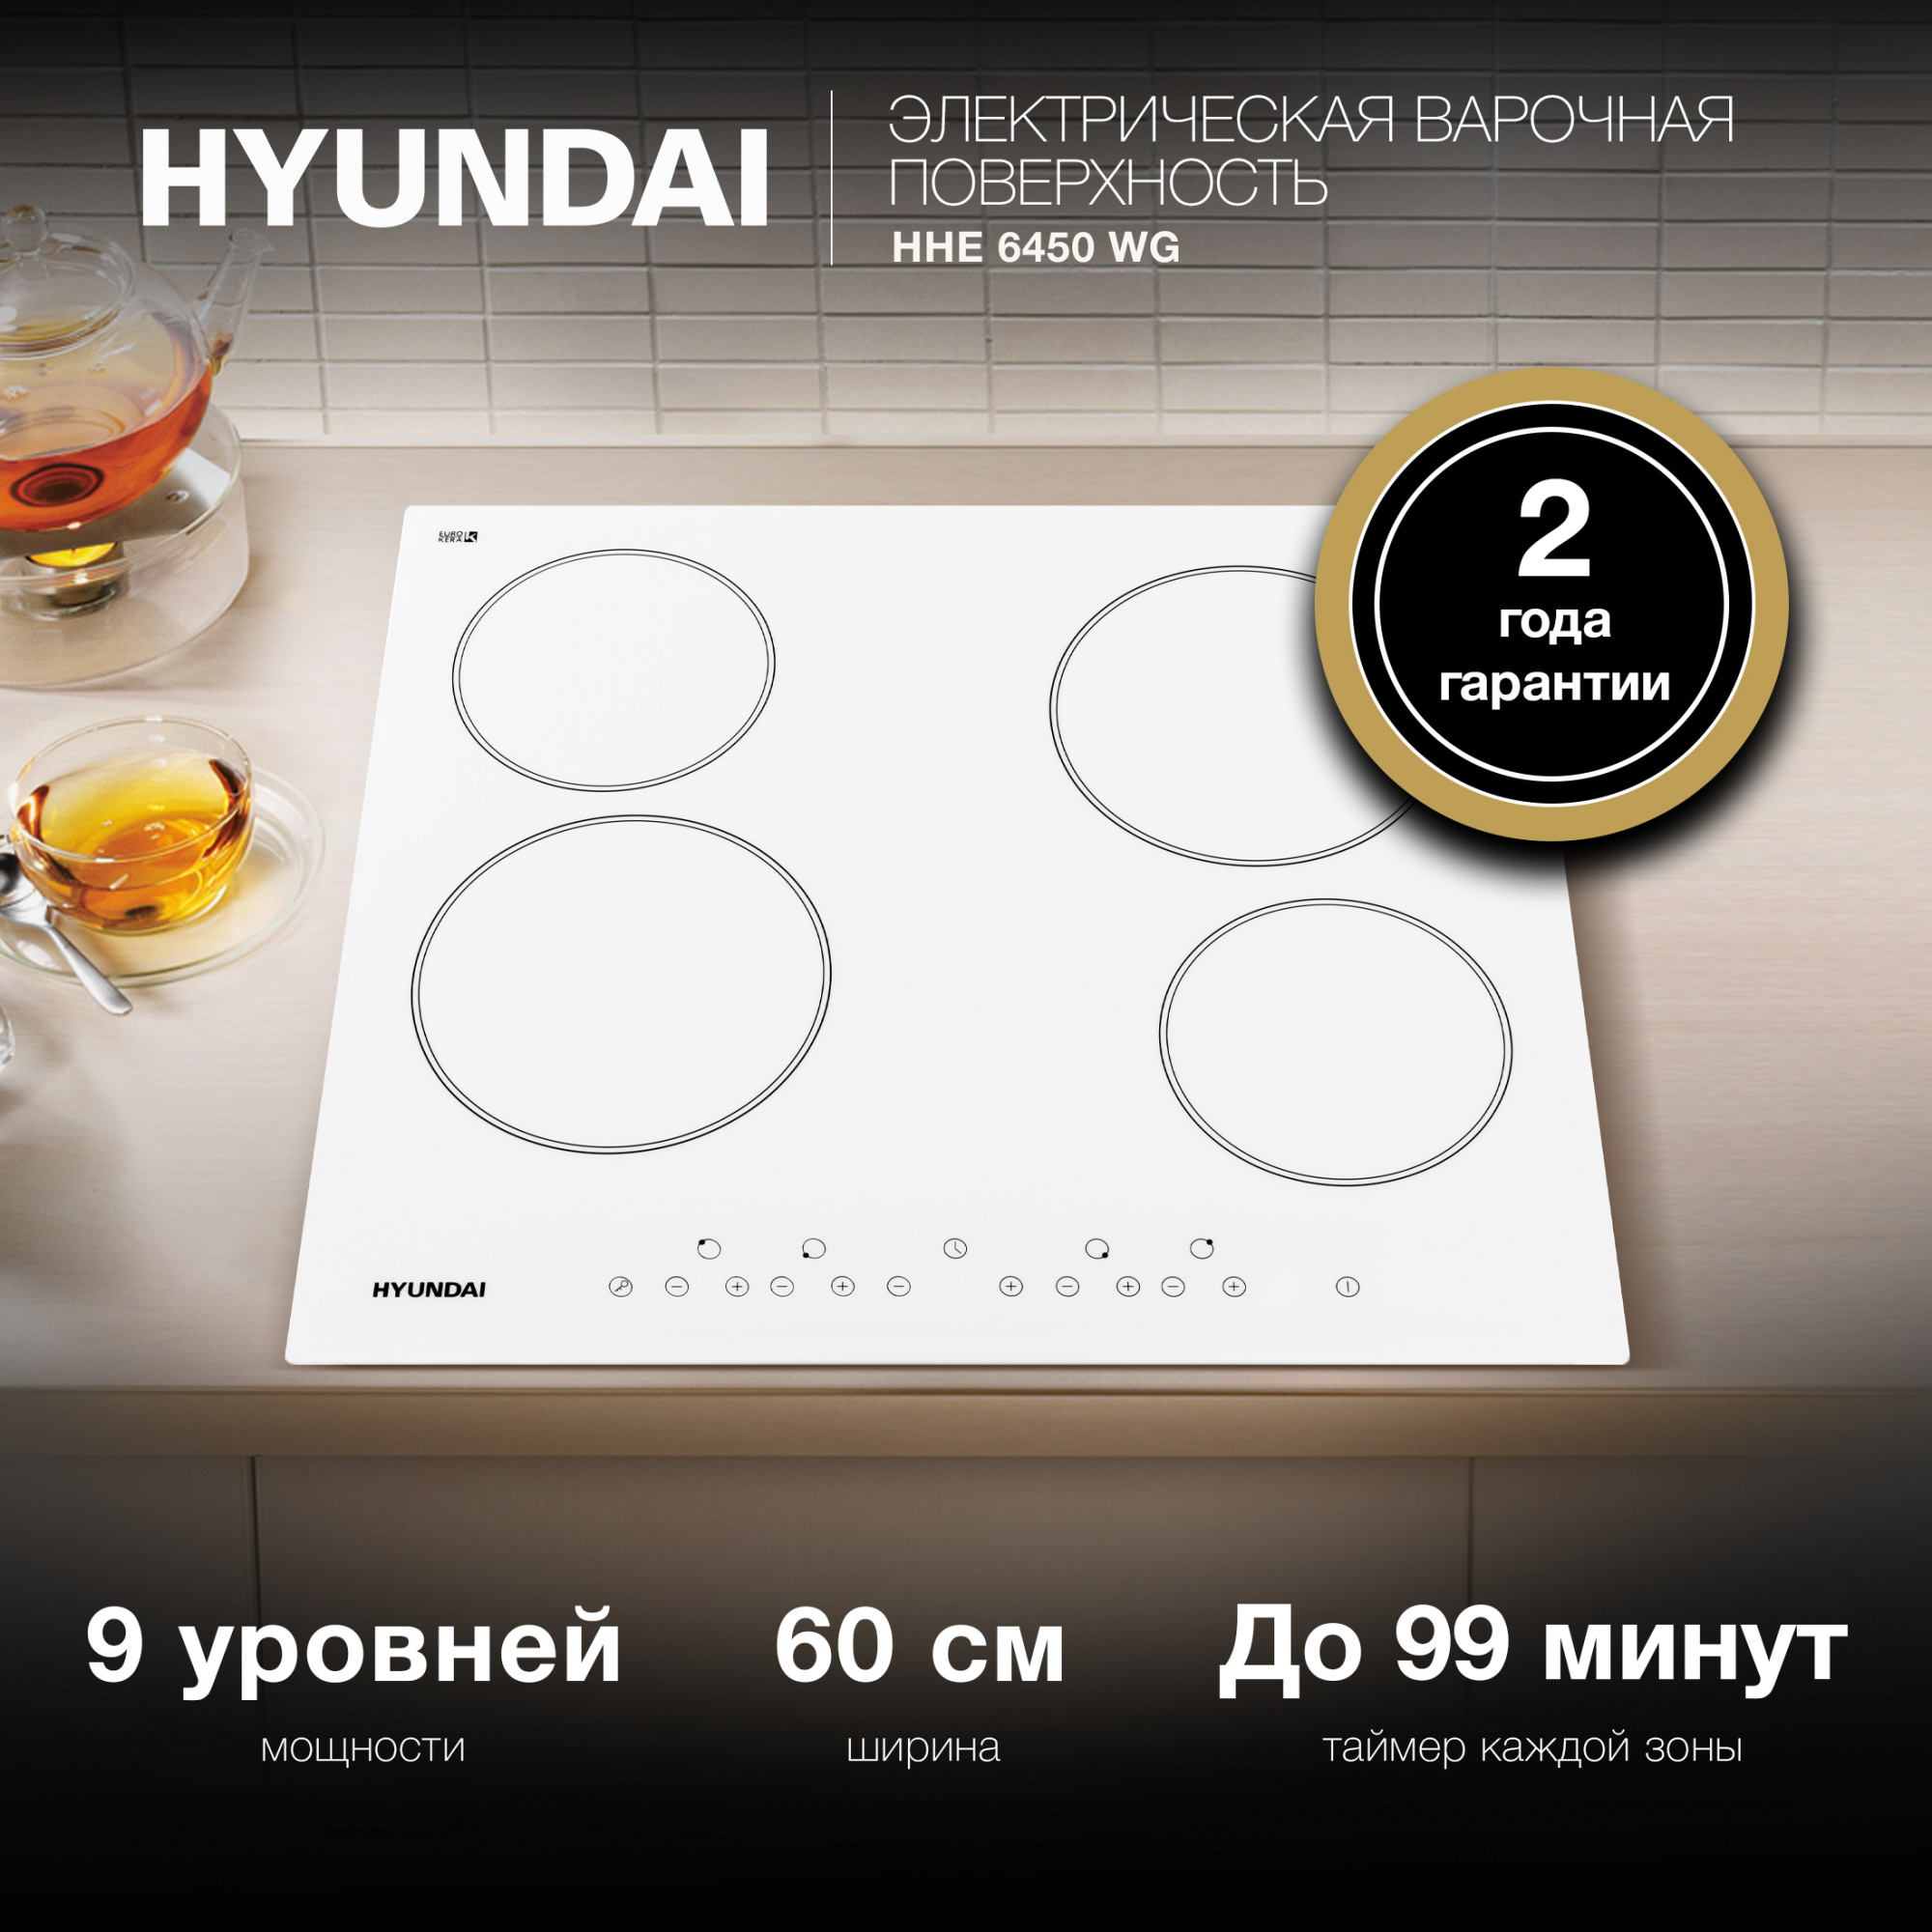 Варочная поверхность Hyundai HHE 6450 WG белый